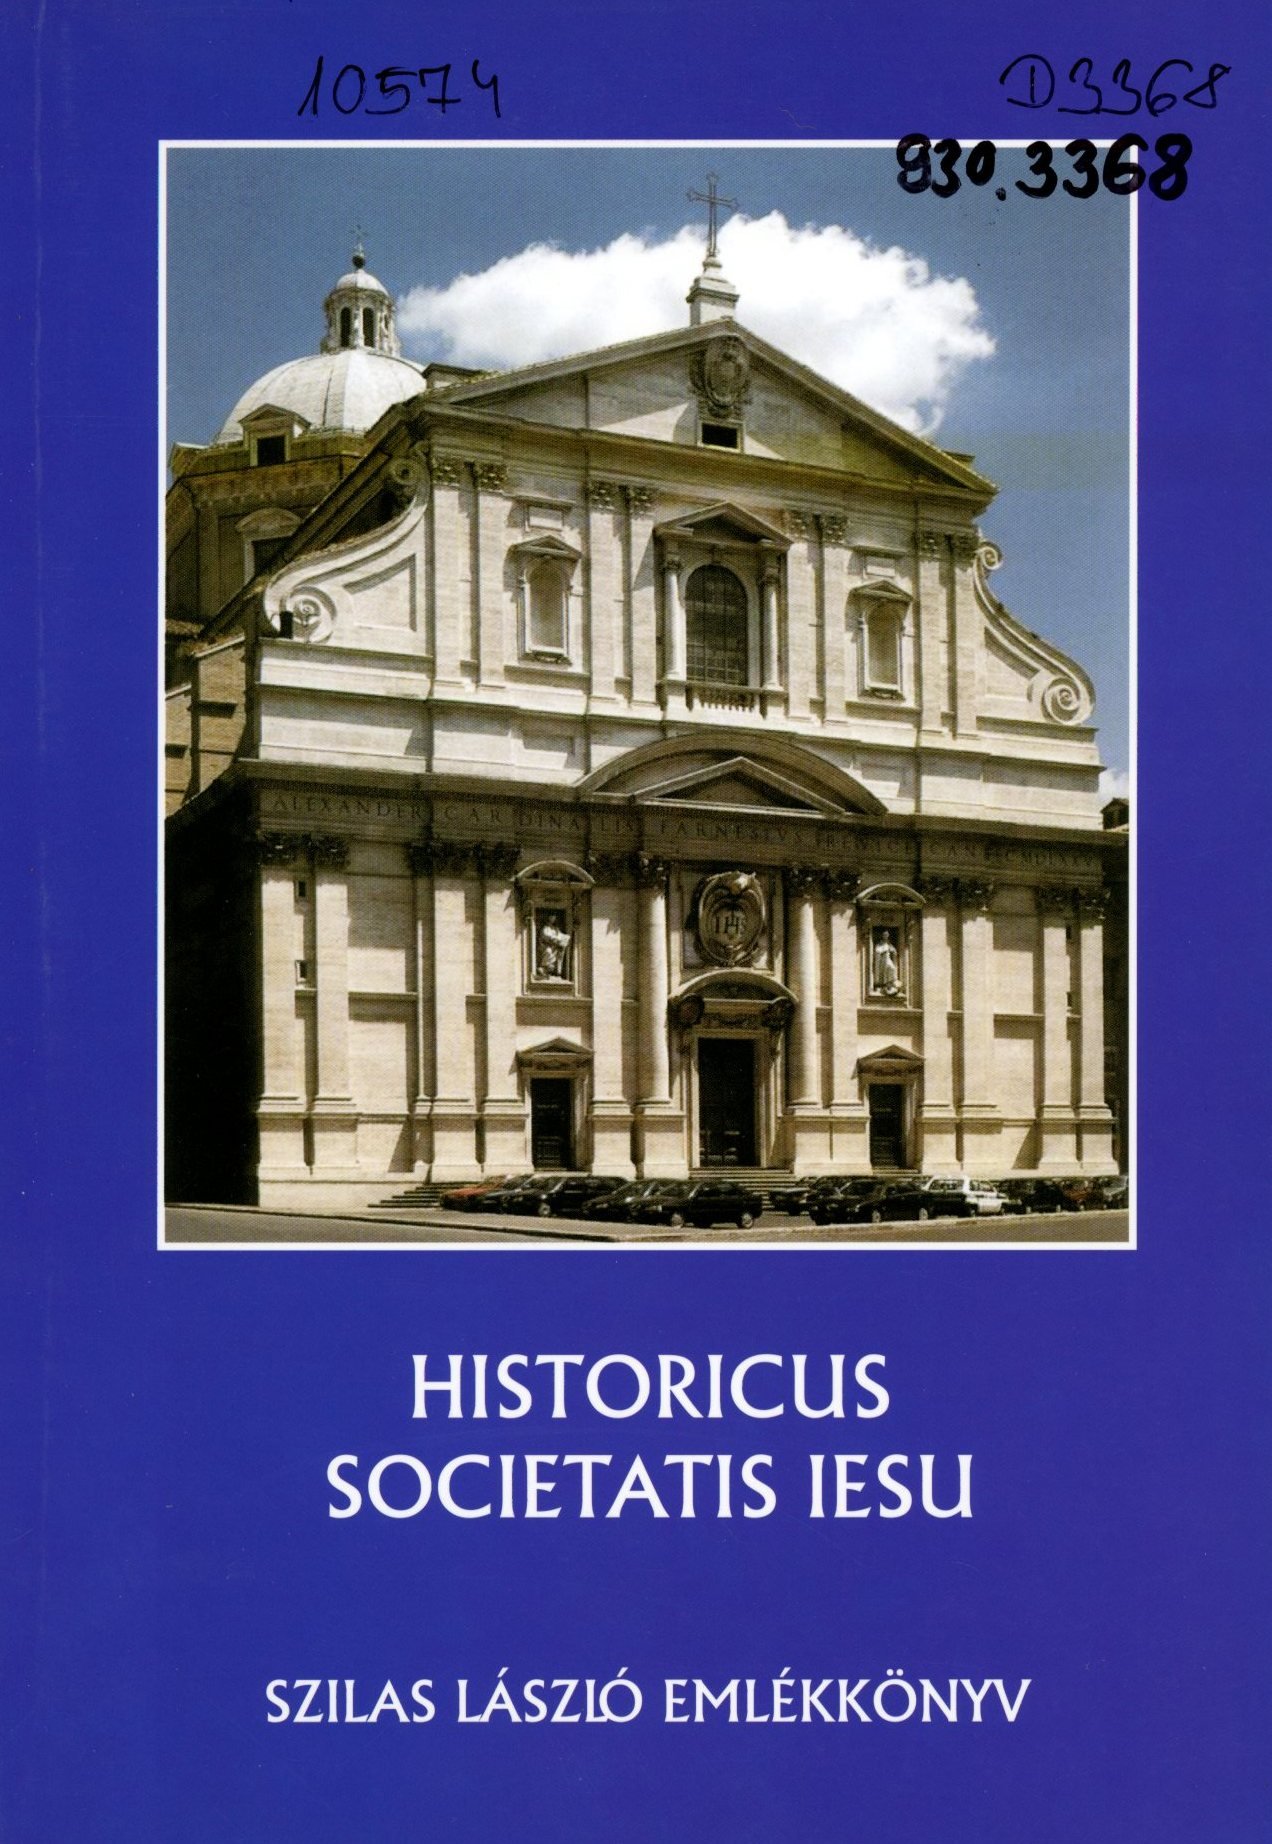 Historicus Societatis Iesu (Erkel Ferenc Múzeum és Könyvtár, Gyula CC BY-NC-SA)